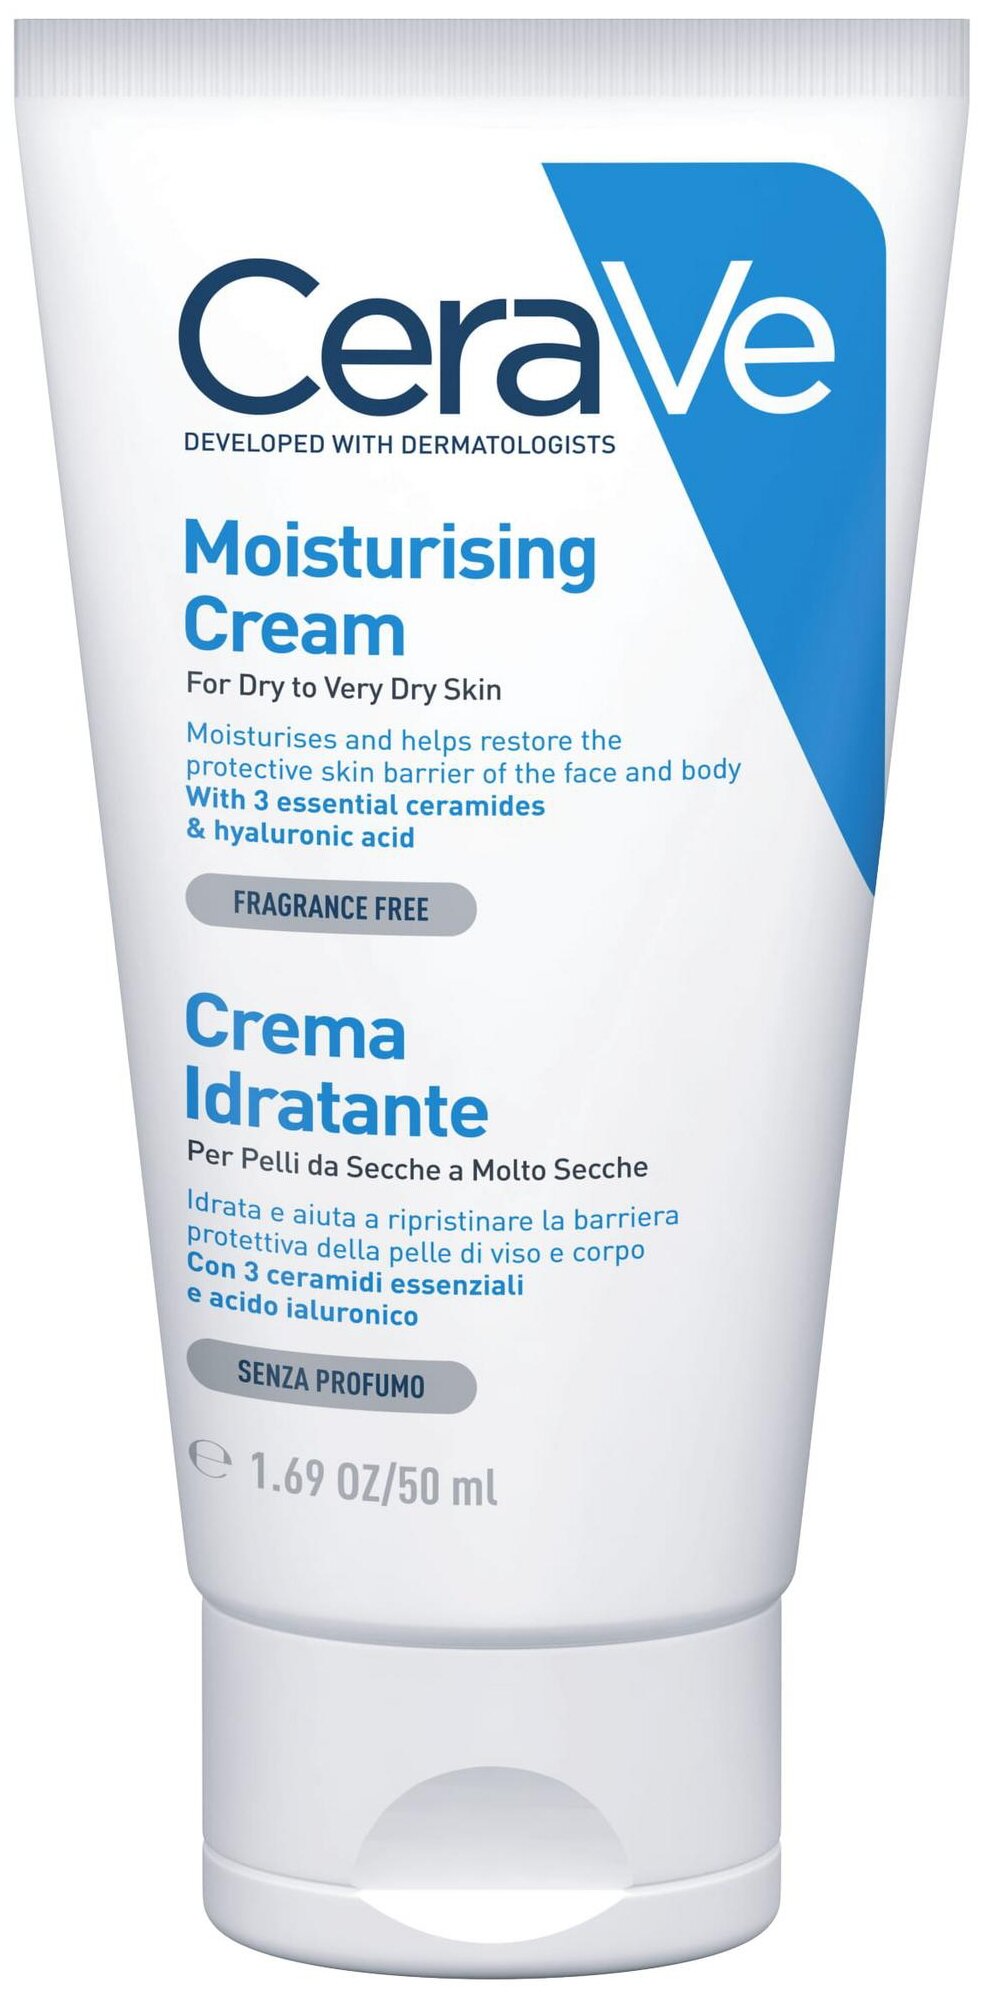 CeraVe Крем для лица и тела Moisturising Cream Увлажняющий для сухой и очень сухой кожи лица и тела, 50 мл